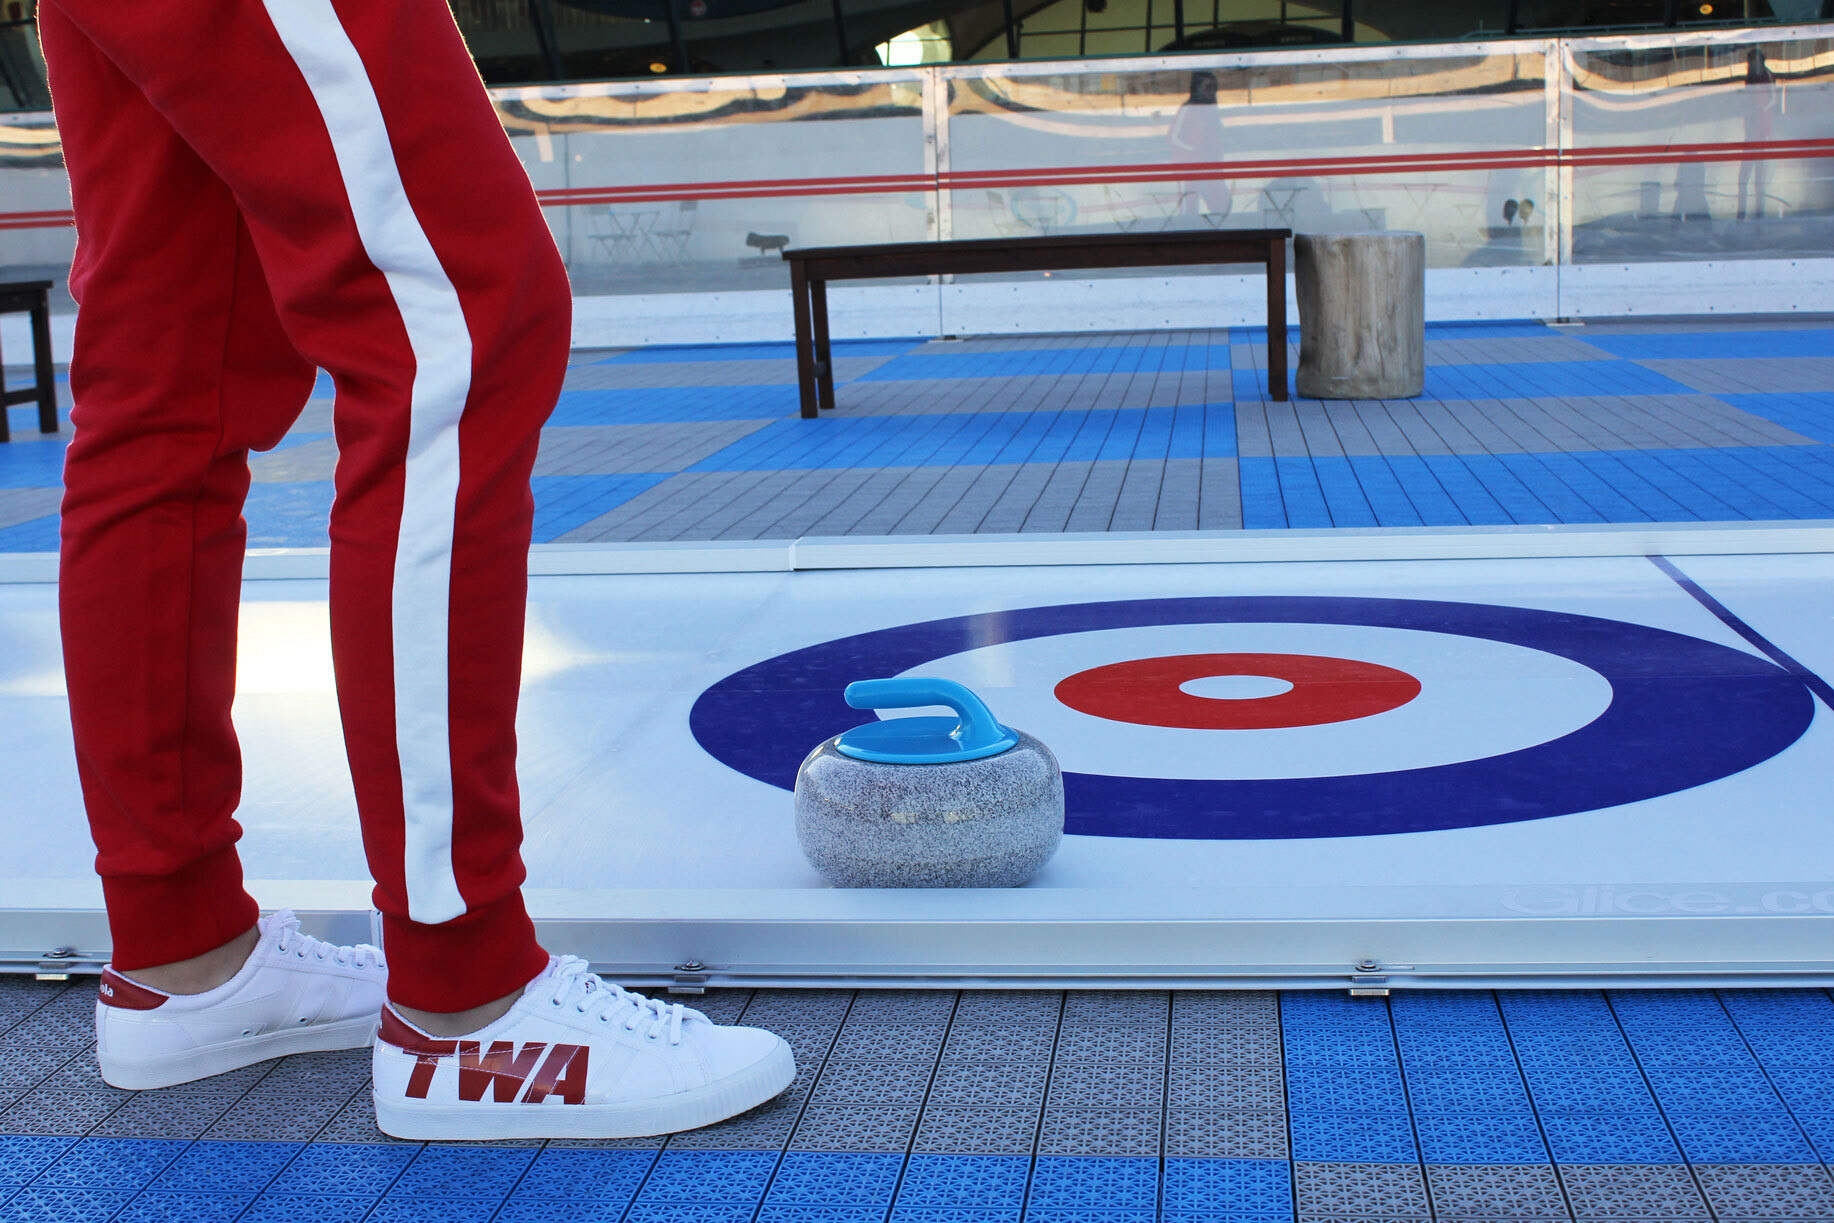 TWA Hotel curling rink